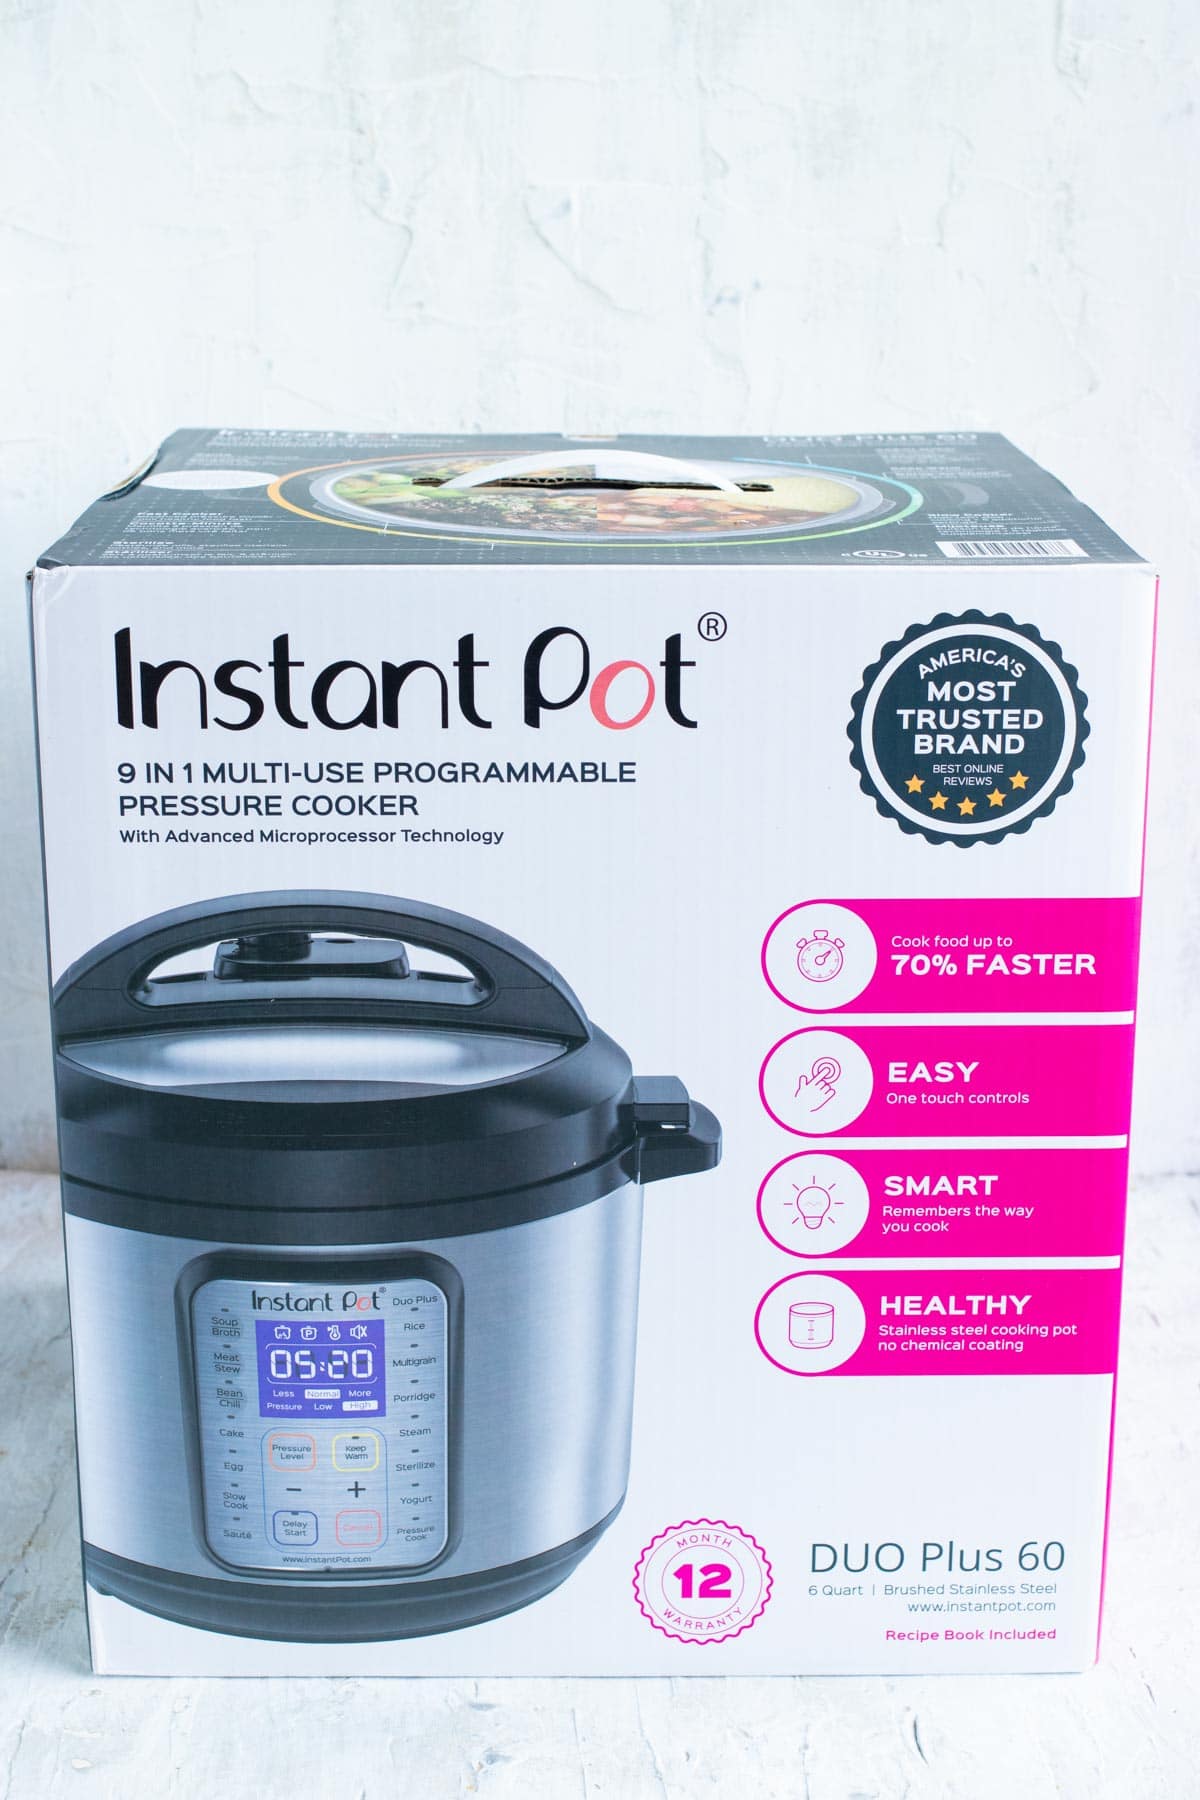 The Instant Pot Duo Plus 6 quart pressure cooker box.